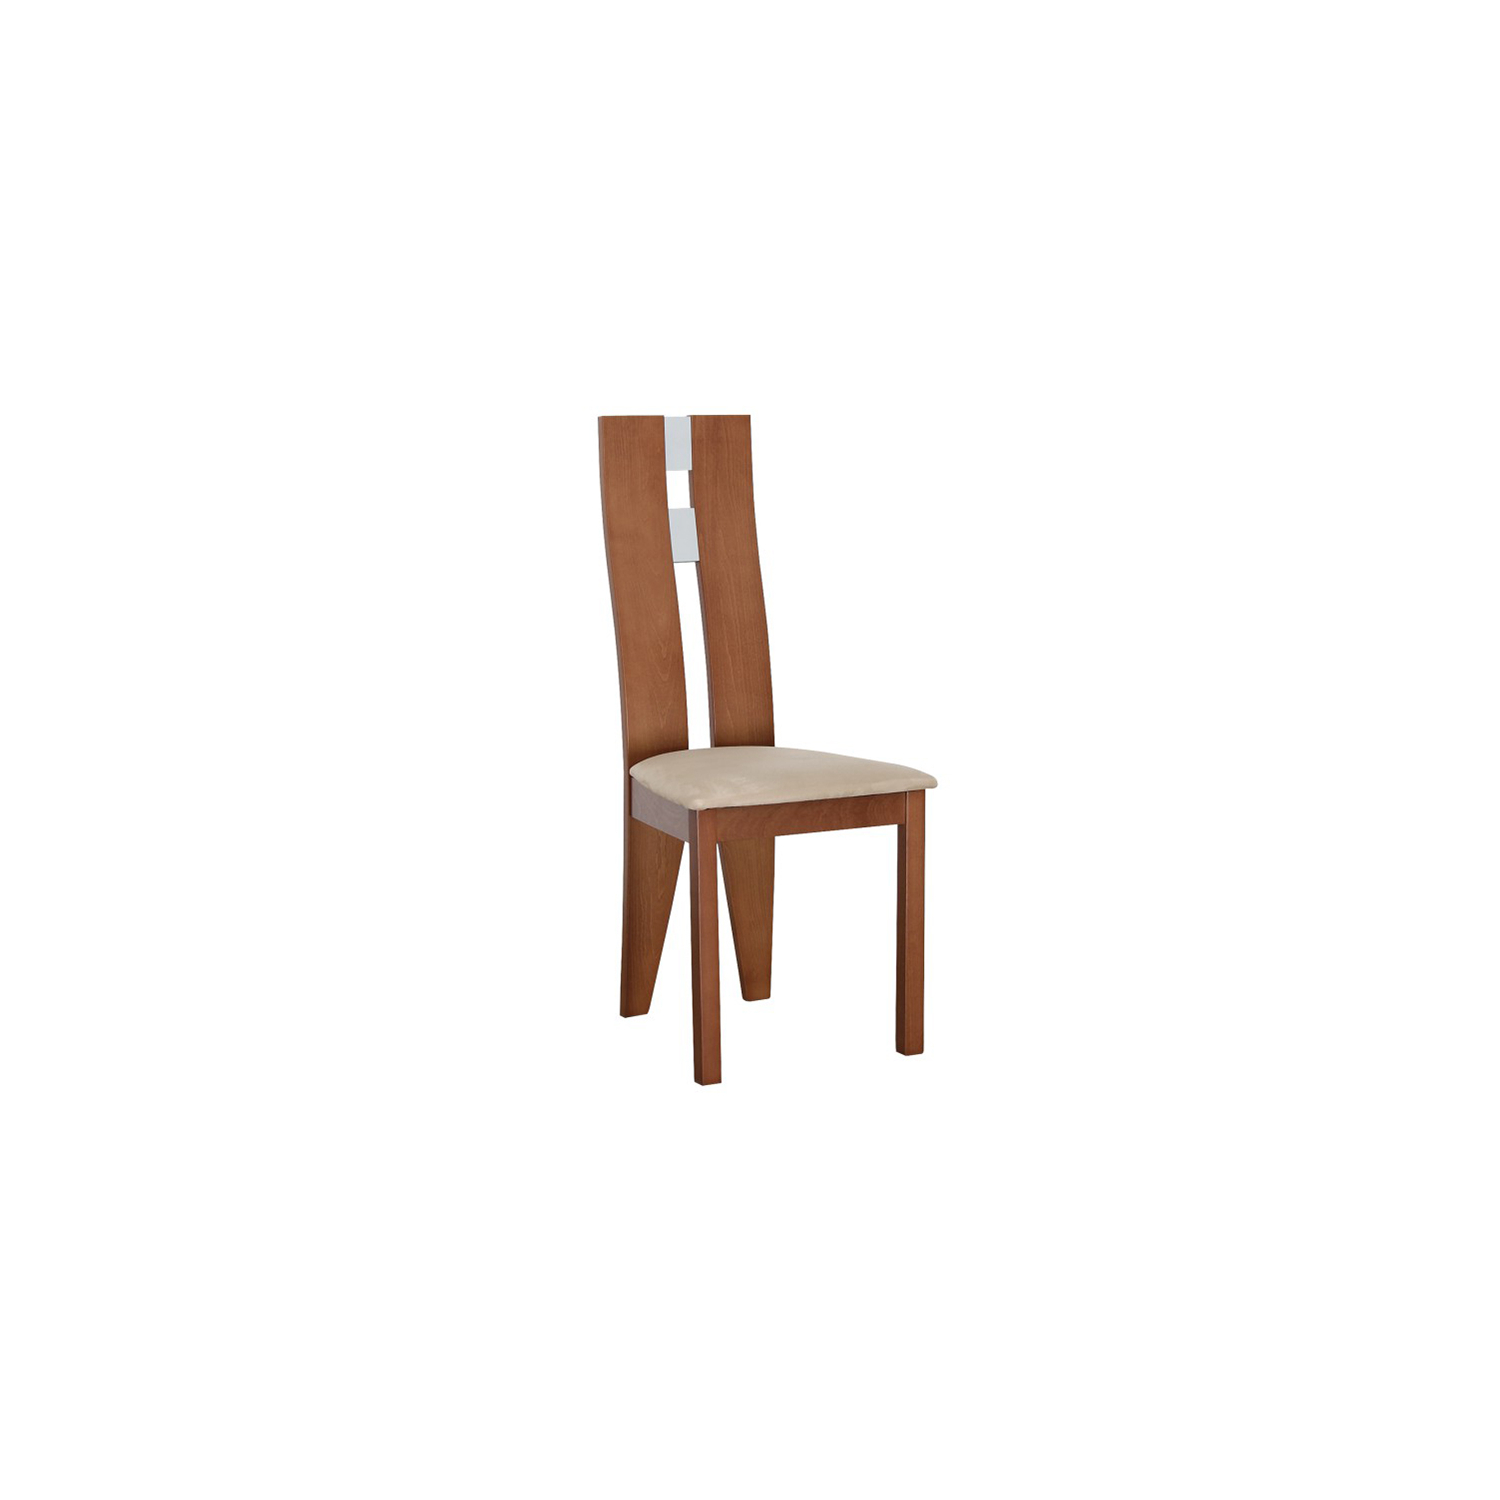 Magas étkező szék, cseresznye/barna szövet, BONA